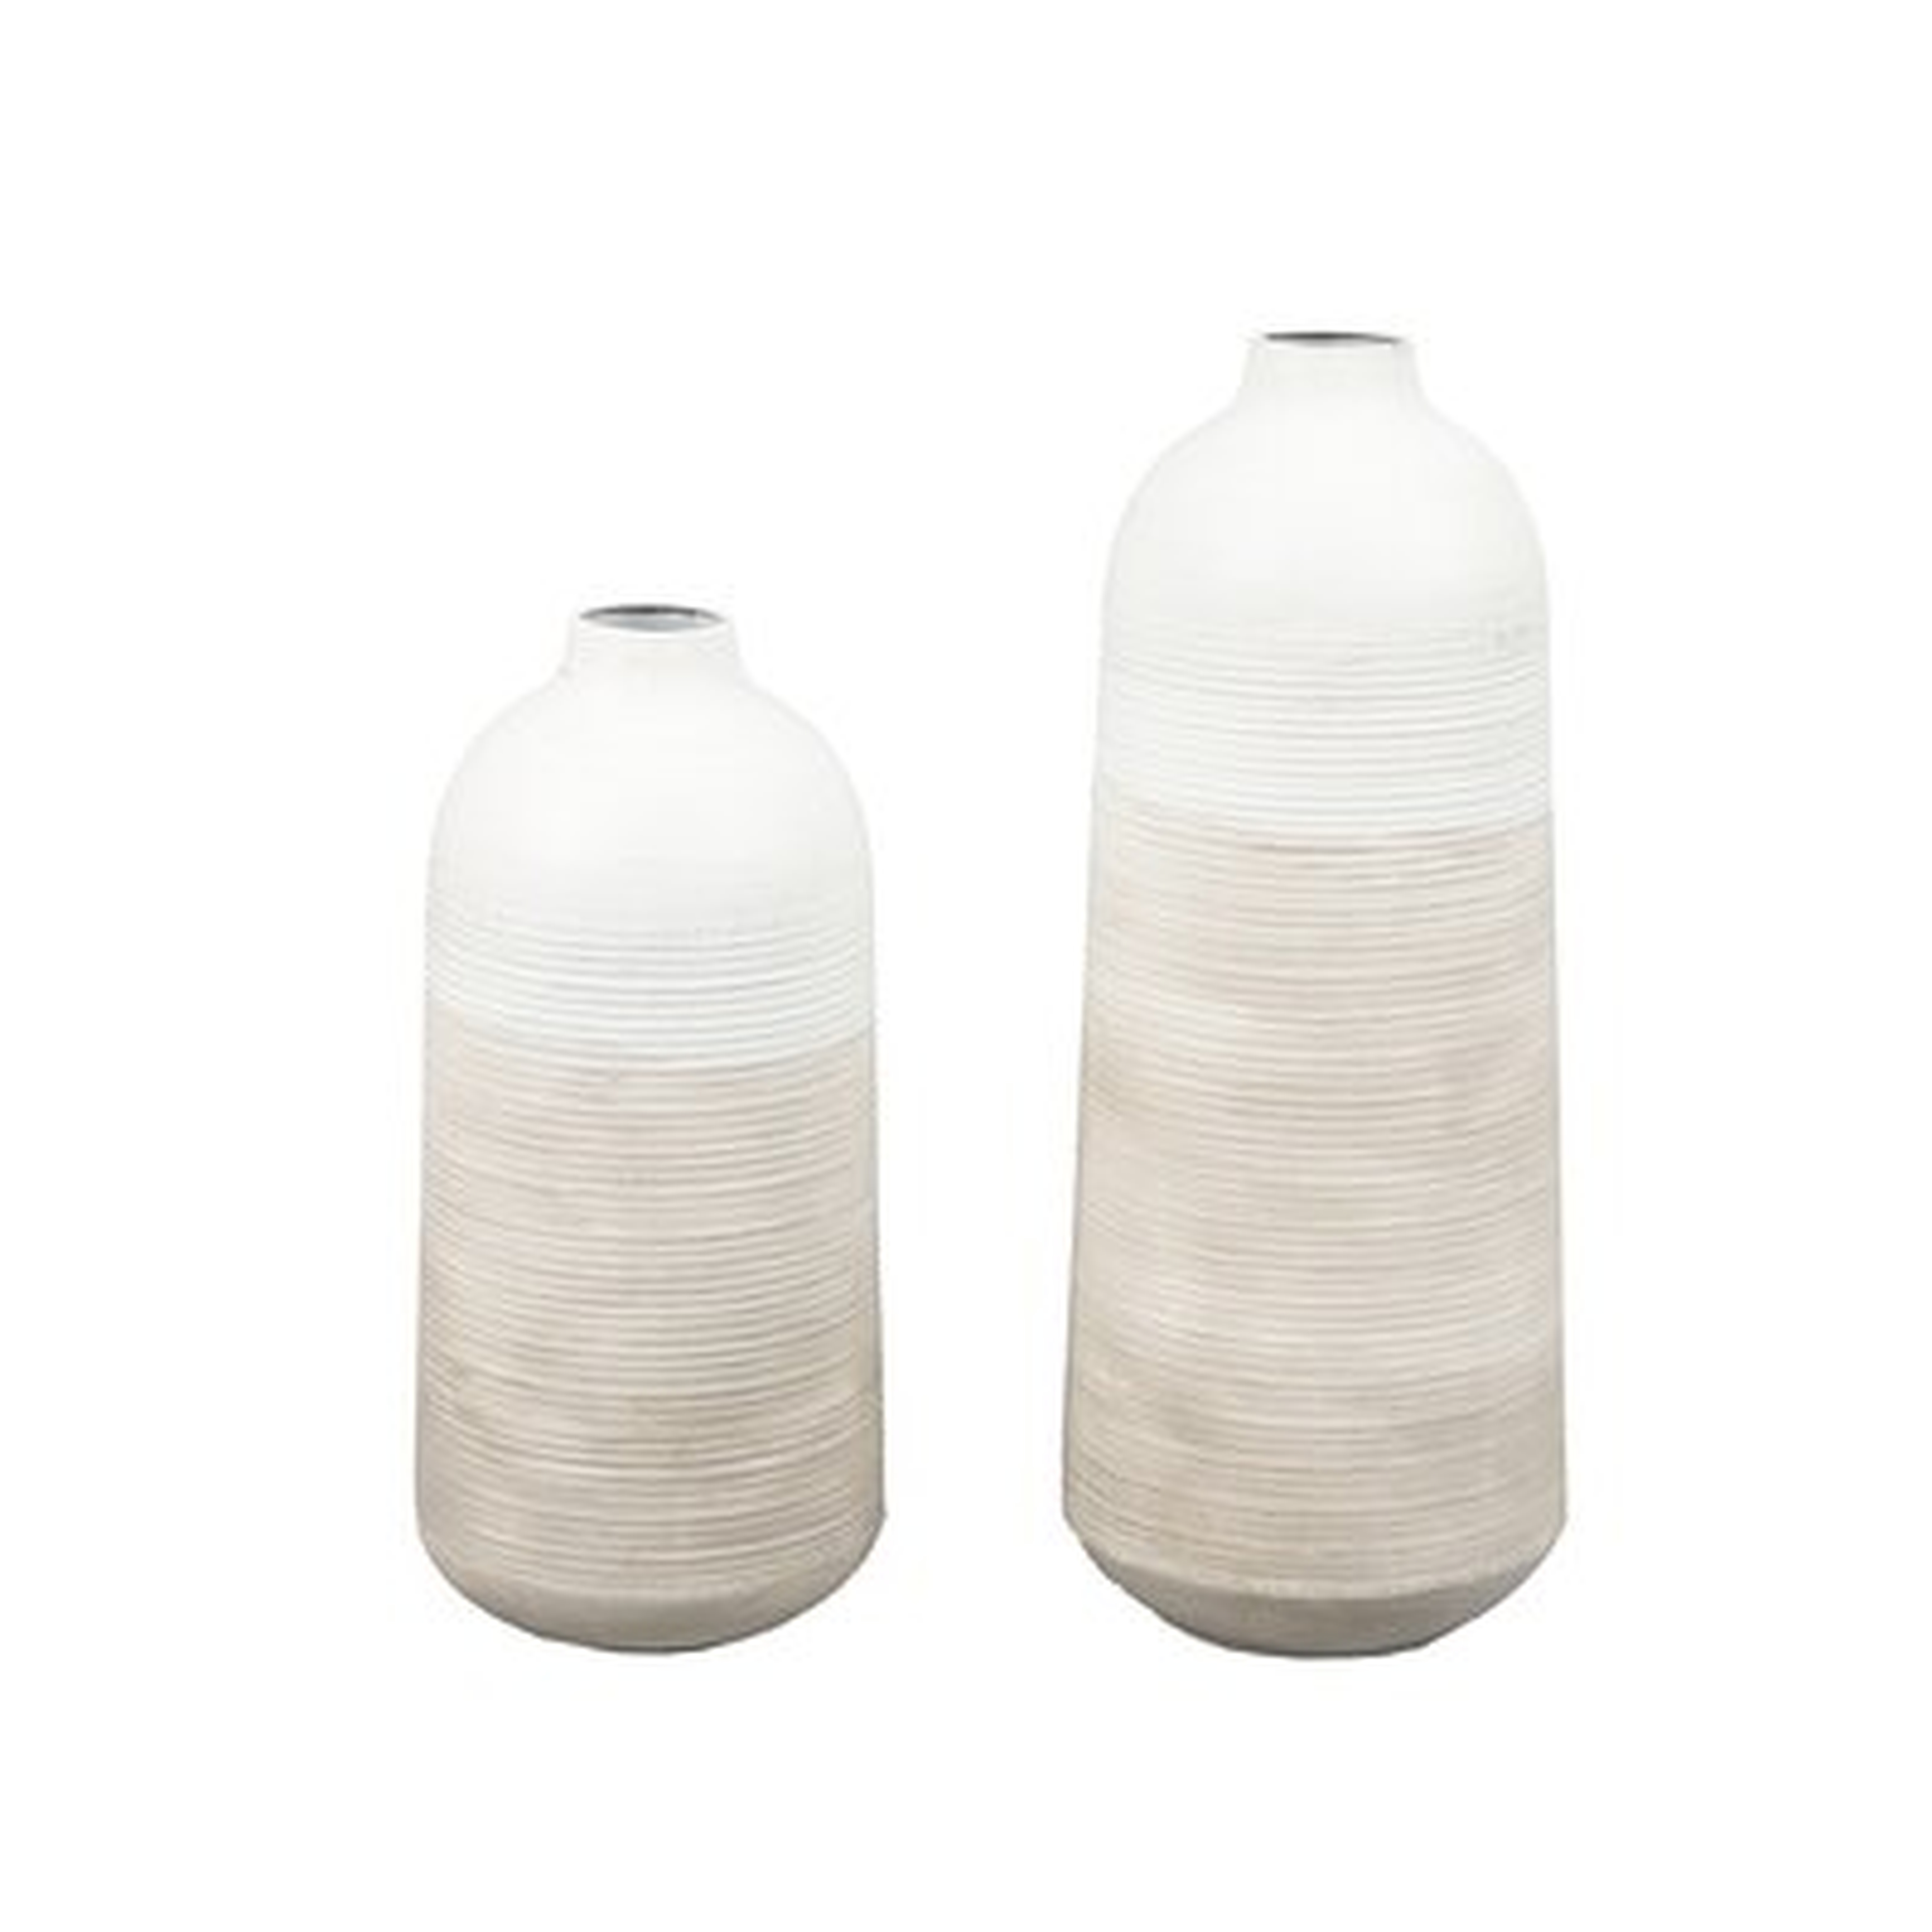 Gradient Metal Vases, Tan & White, Set of 2 - Wayfair